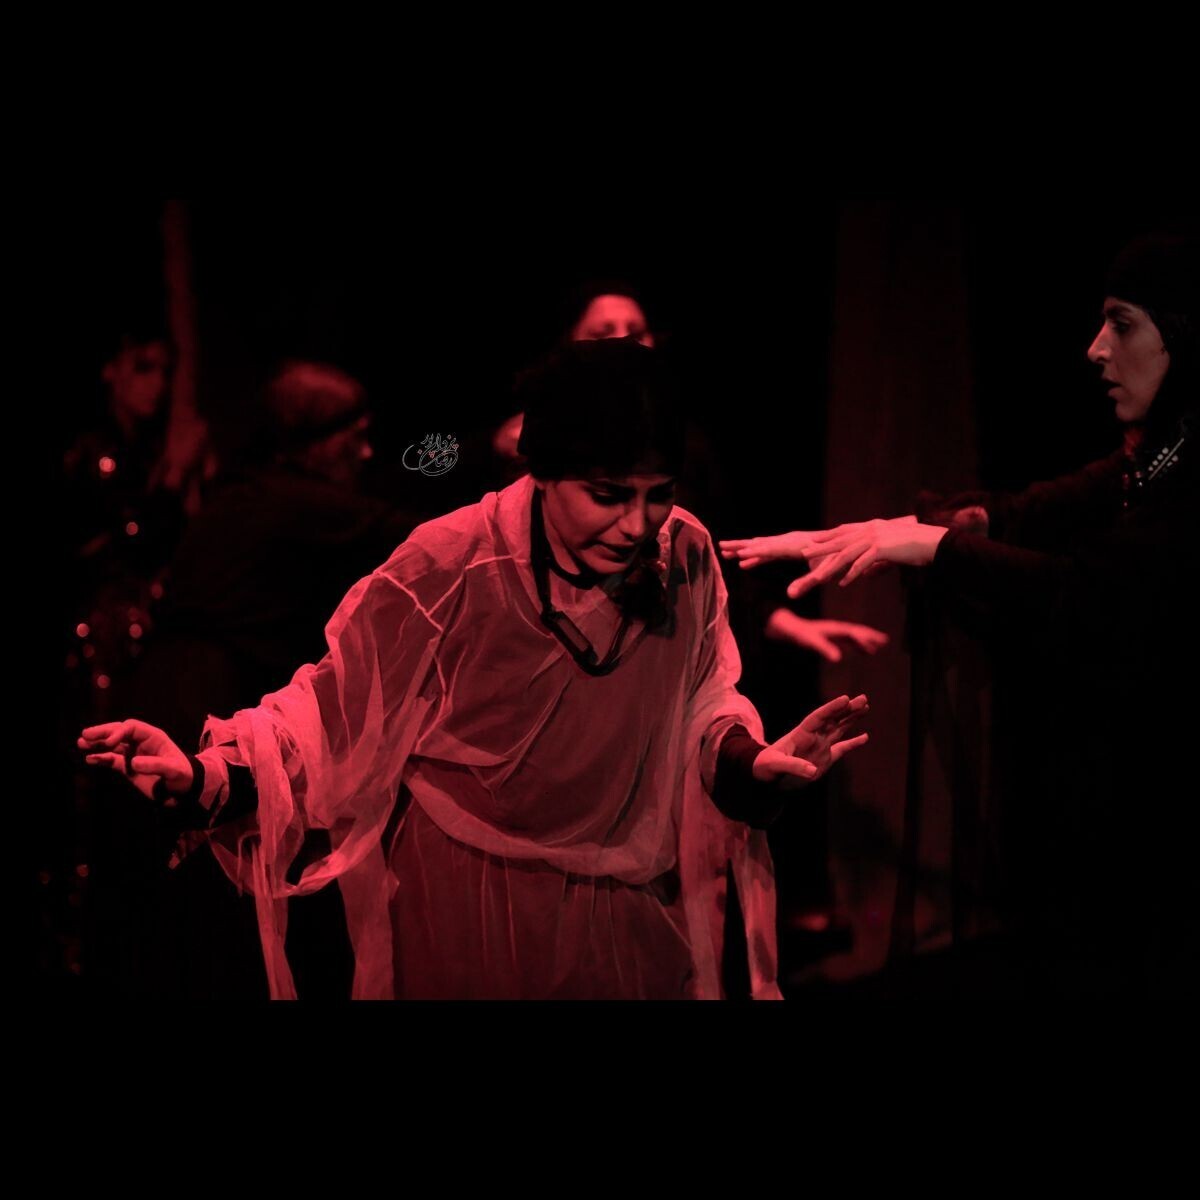 روایتی از اسارت زنان کرد ایزدی بر صحنه تئاتر